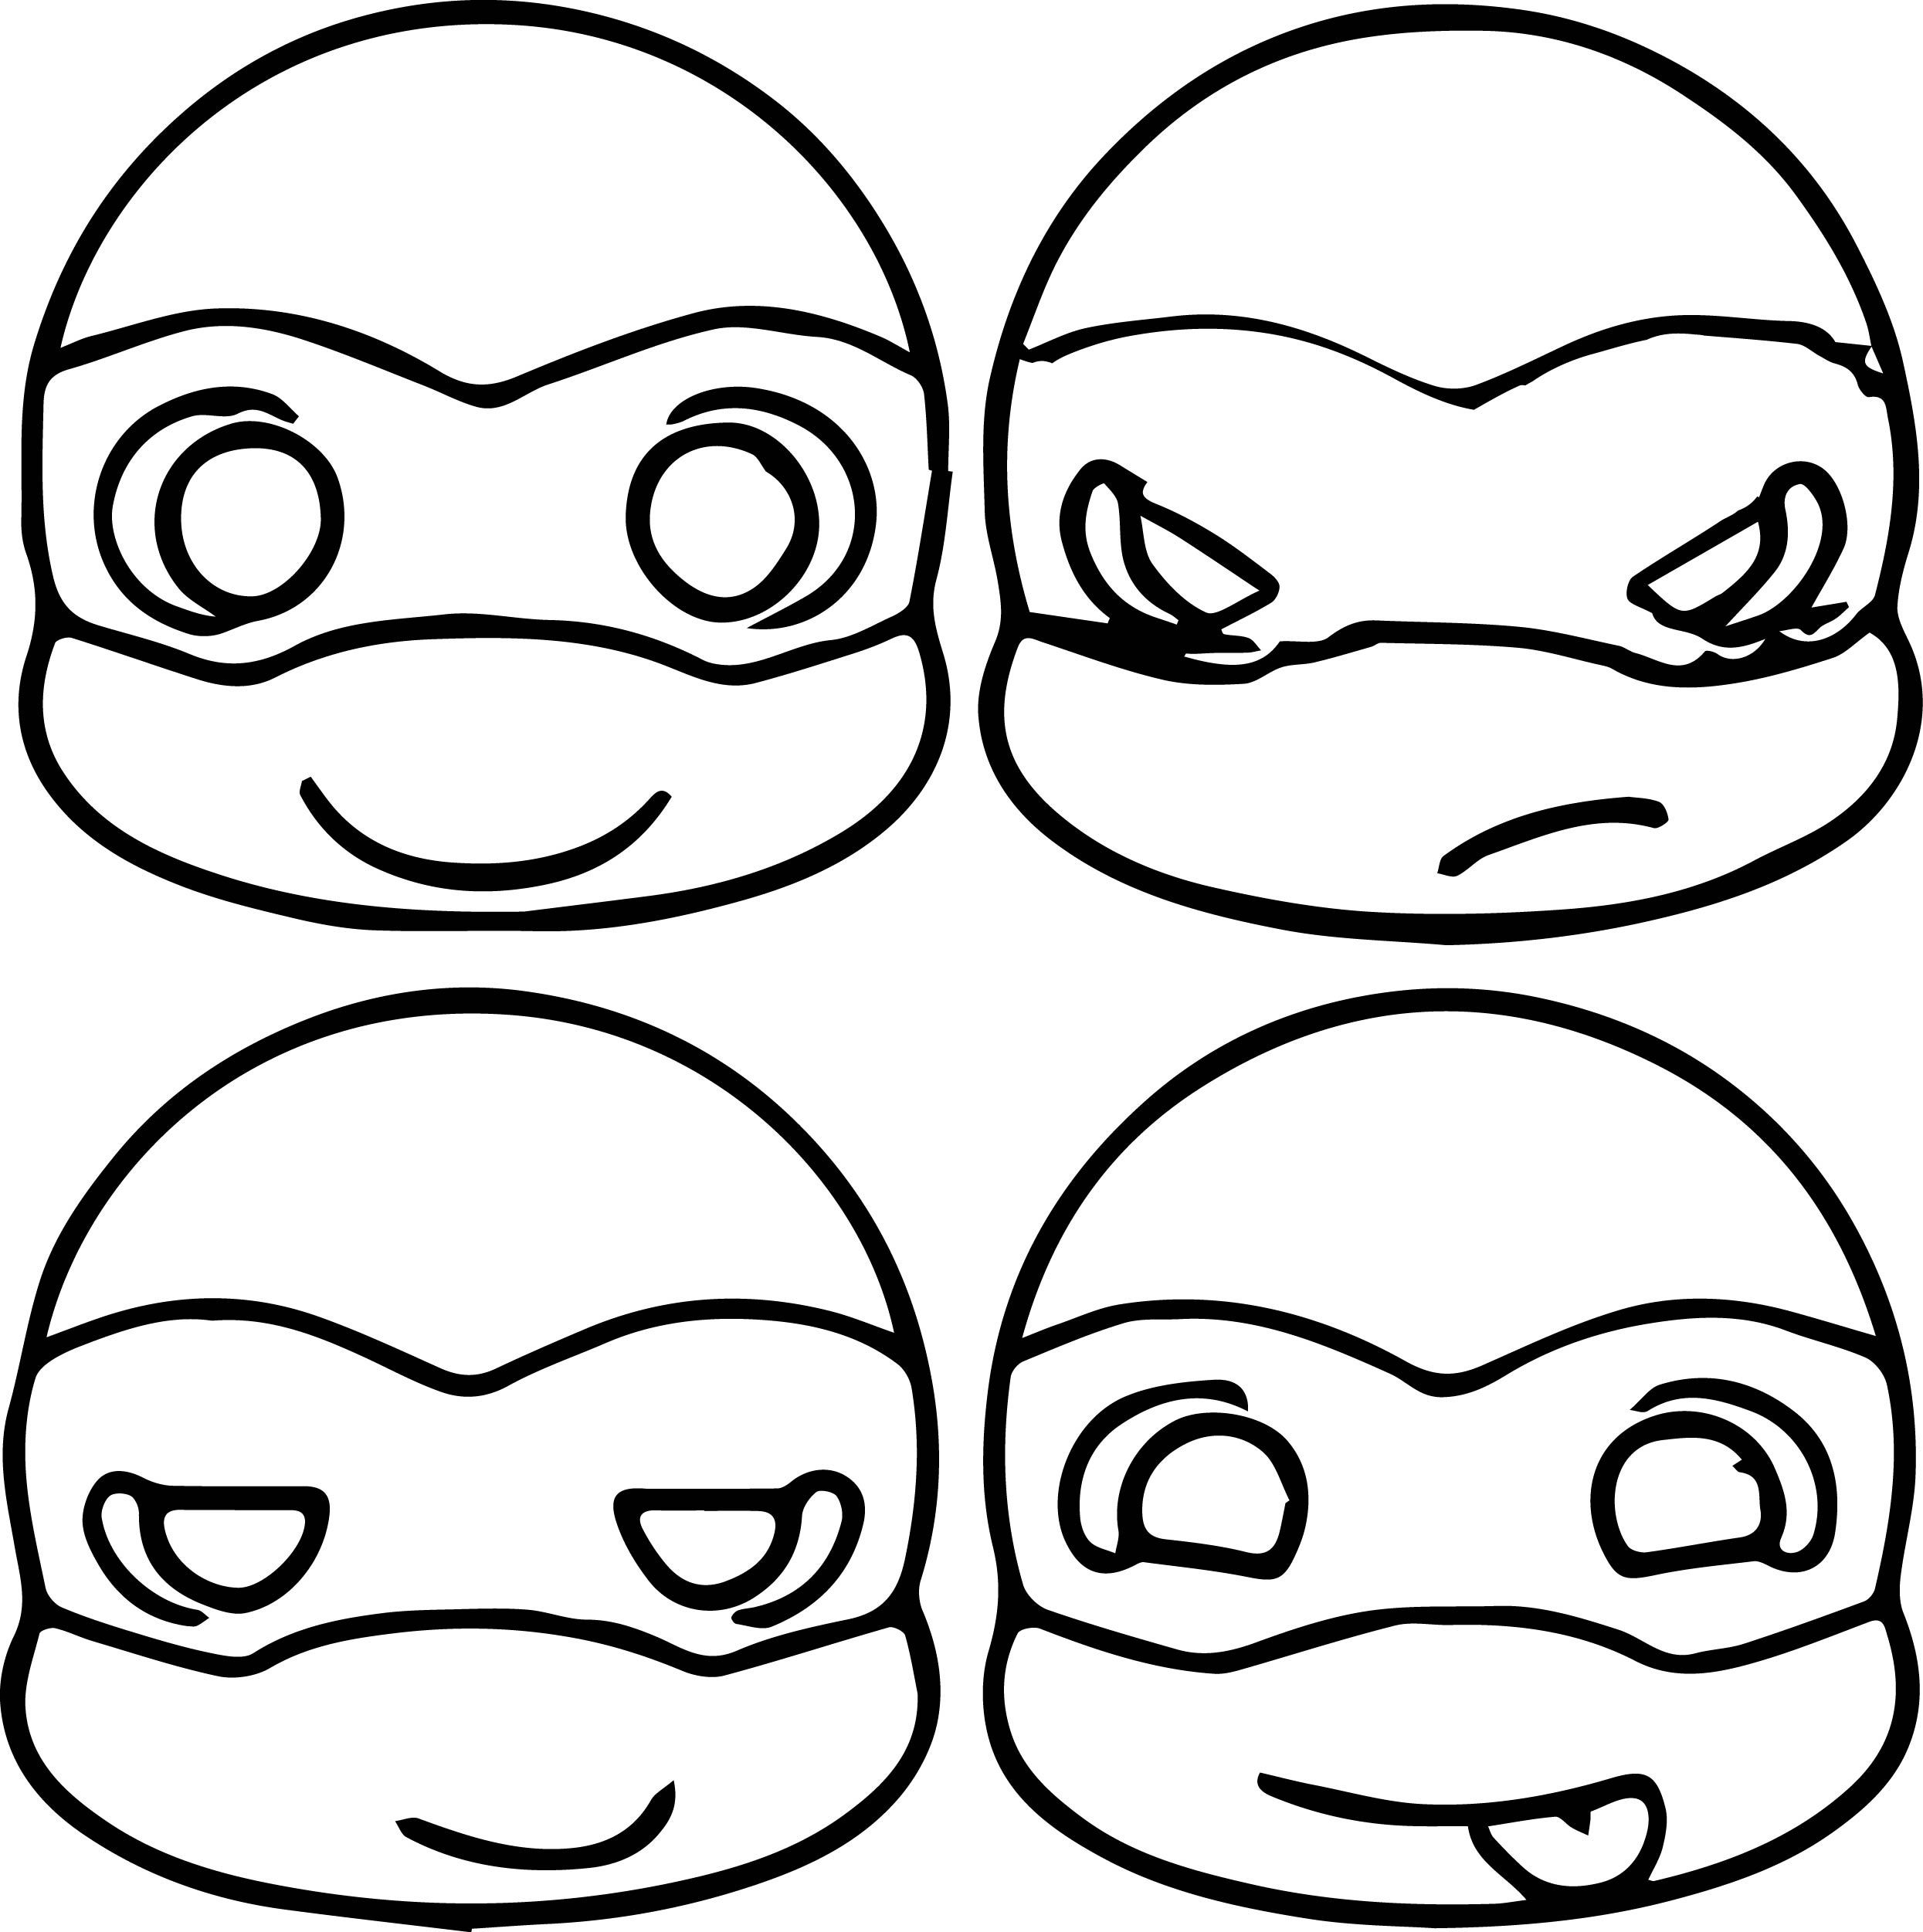 Teenage Mutant Ninja Turtles Coloring Pages Best